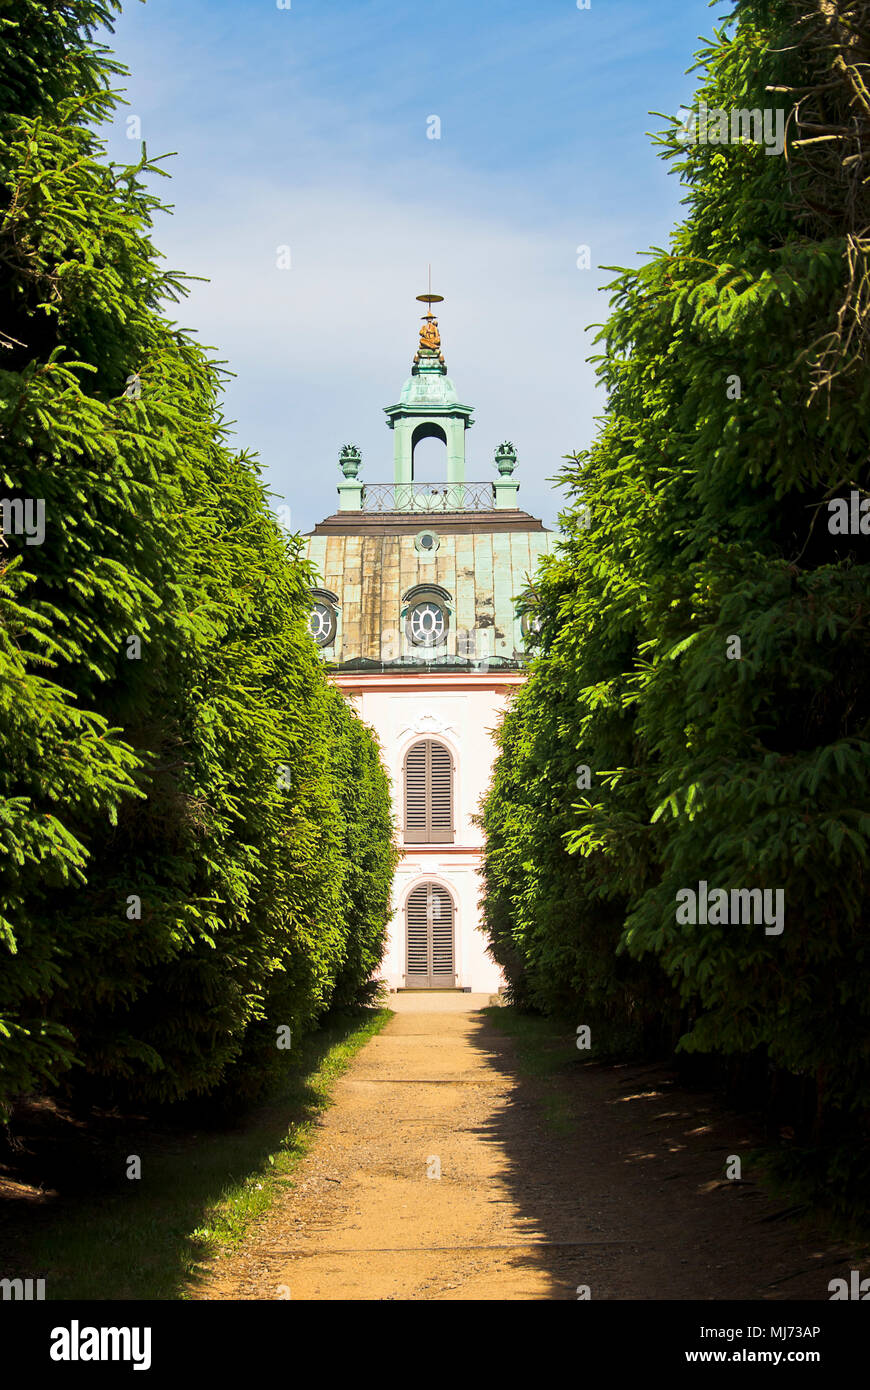 Angesichts der wenig Fasan Palace (fasanenschlösschen) in Moritzburg bei Dresden, Sachsen, Deutschland. Stockfoto